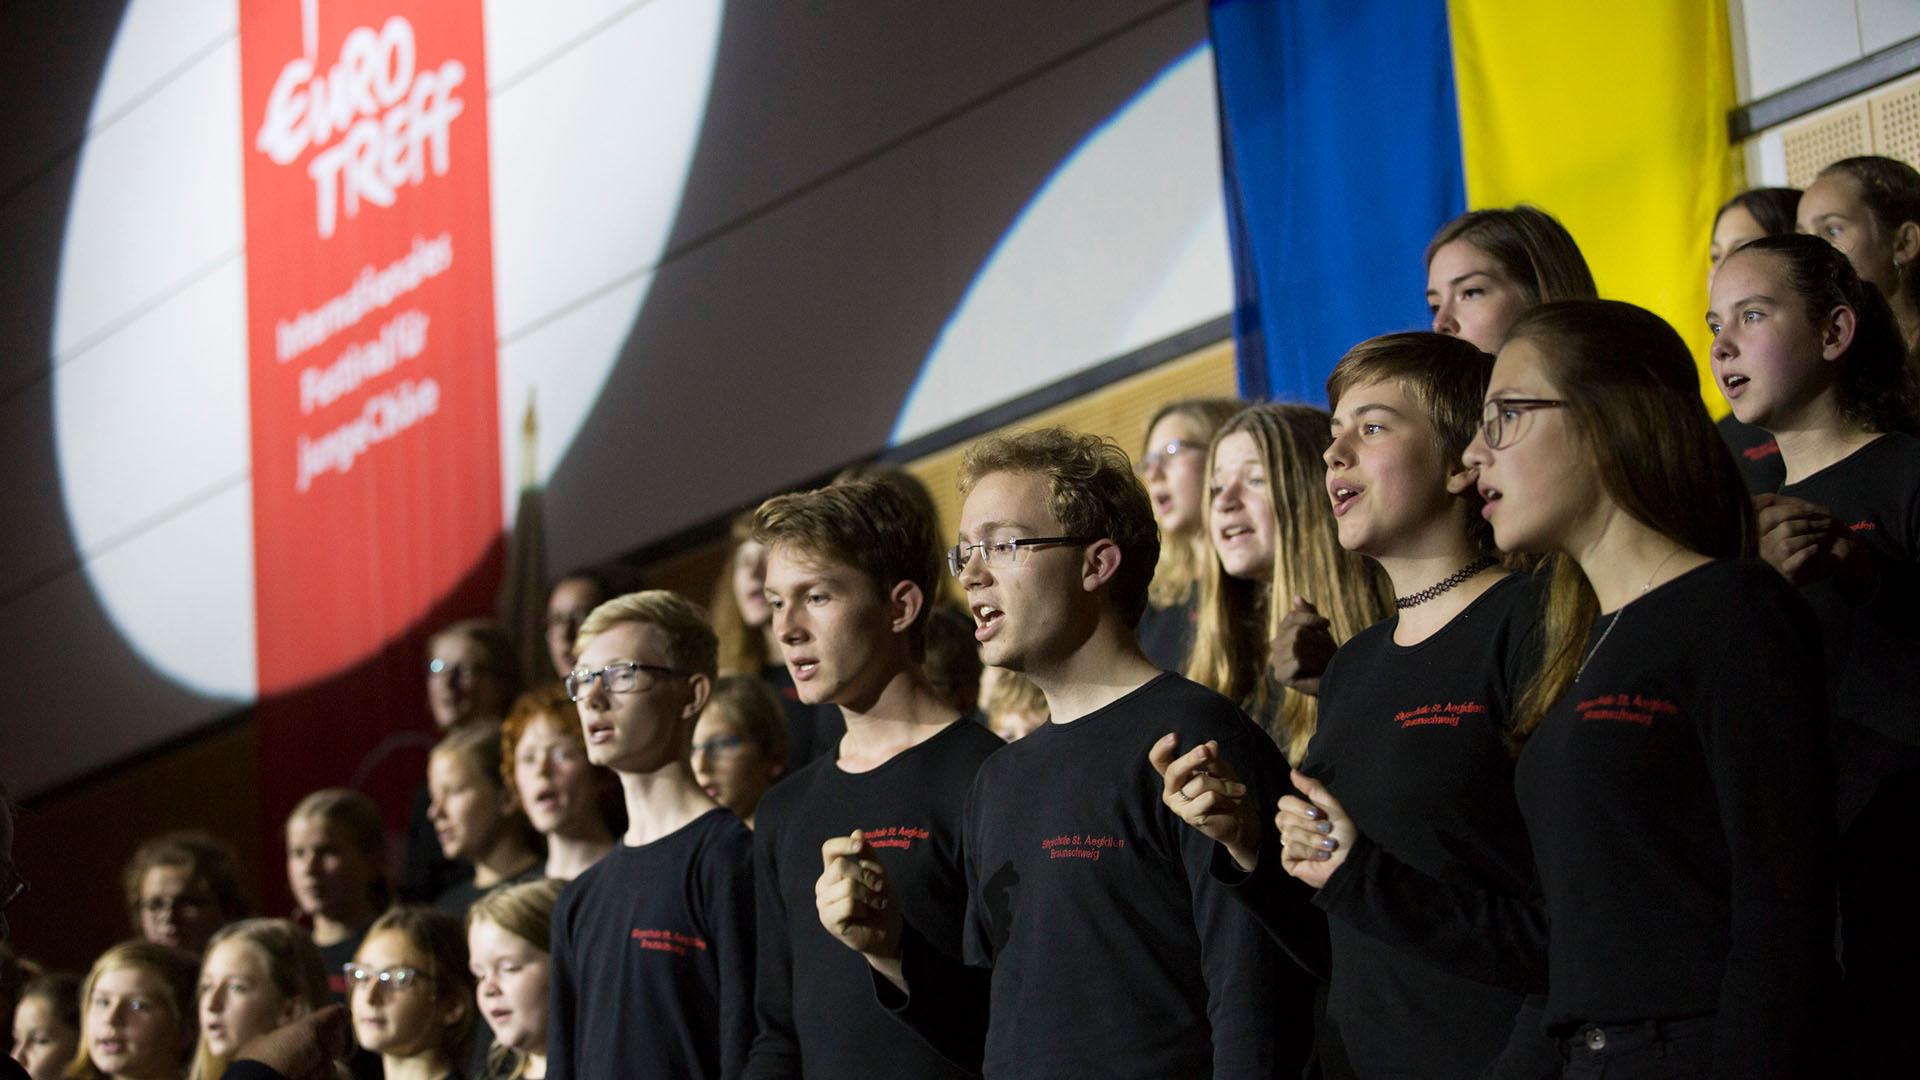 Link zu Veranstaltungsinfos zum Eurotreff.
Bildmotiv: Chor mit singenden Jugendlichen